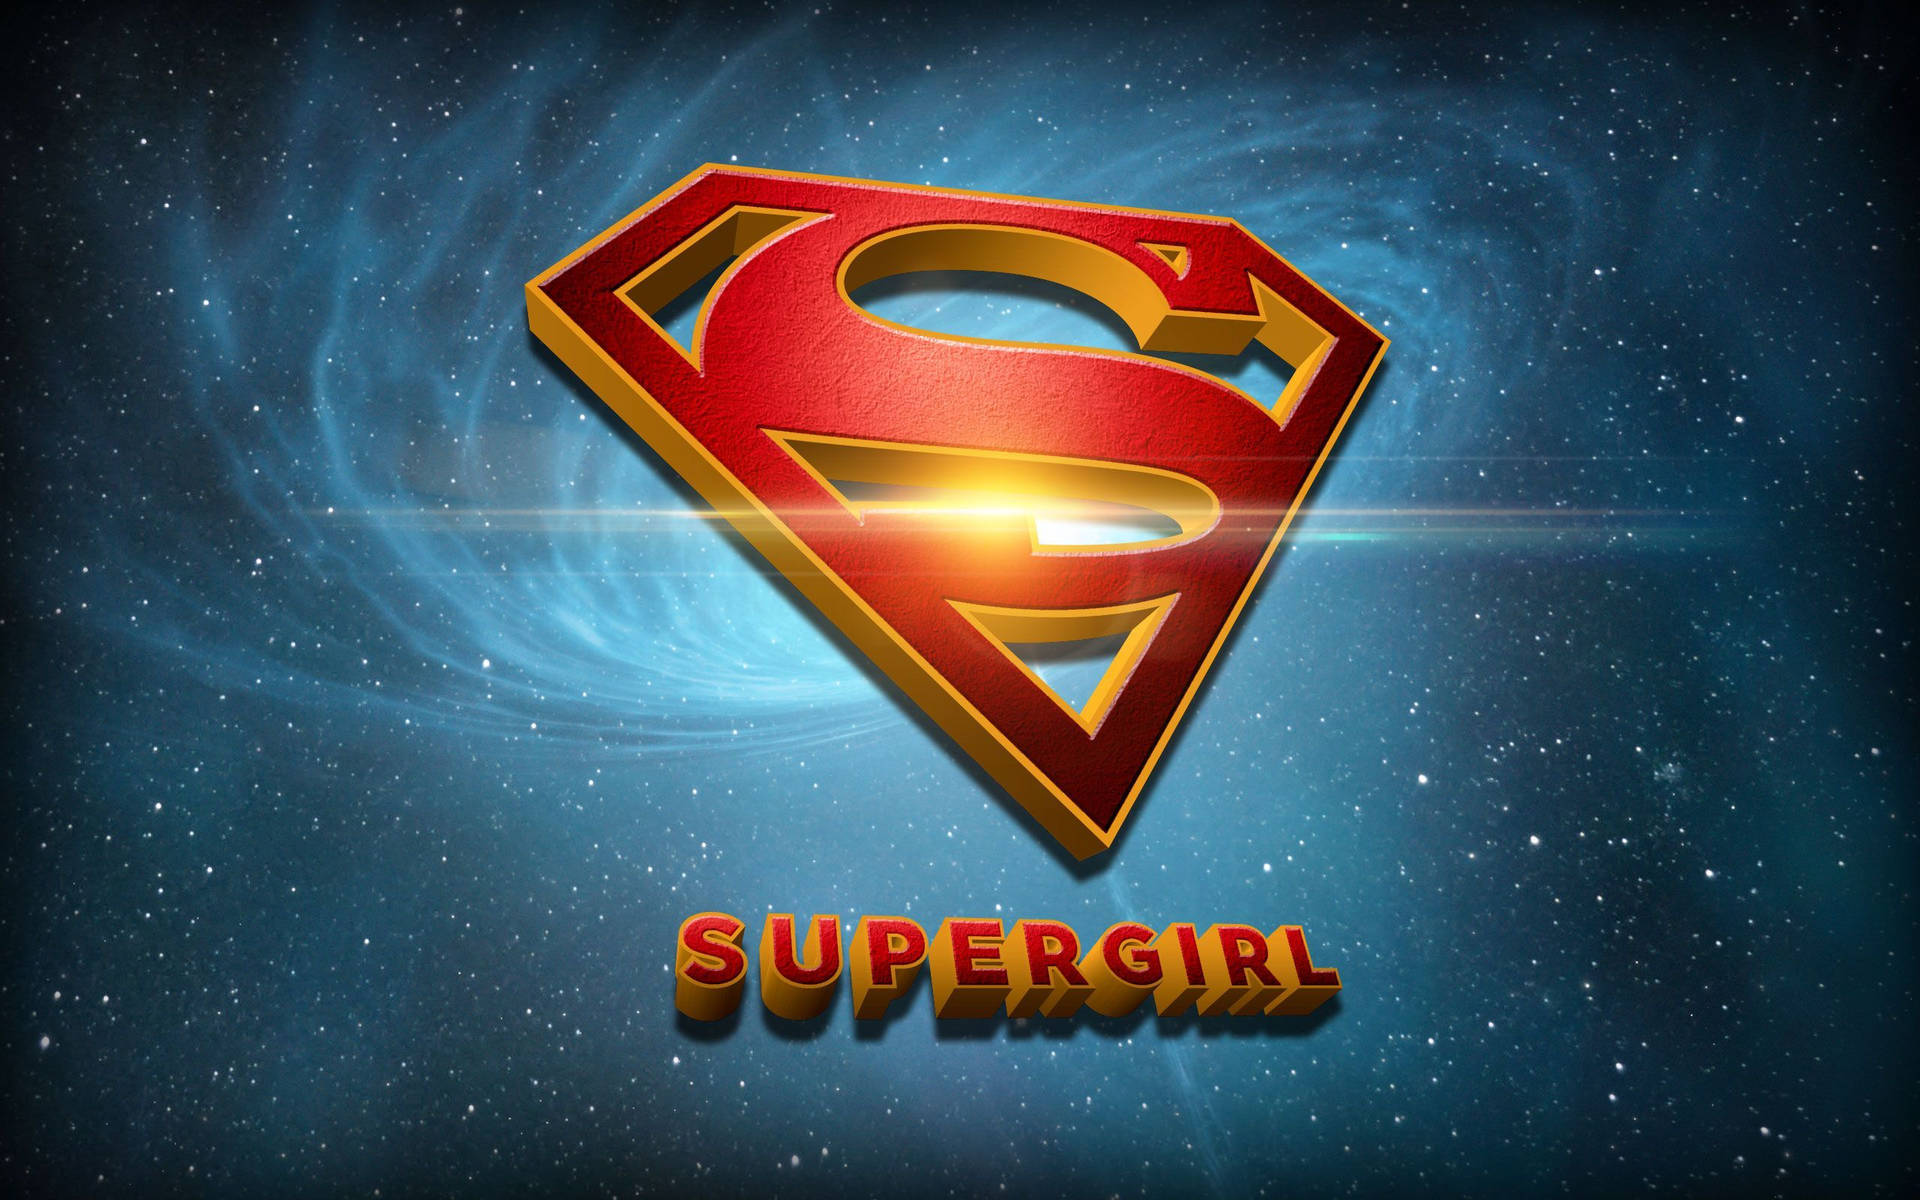 Supergirl Emblem Background